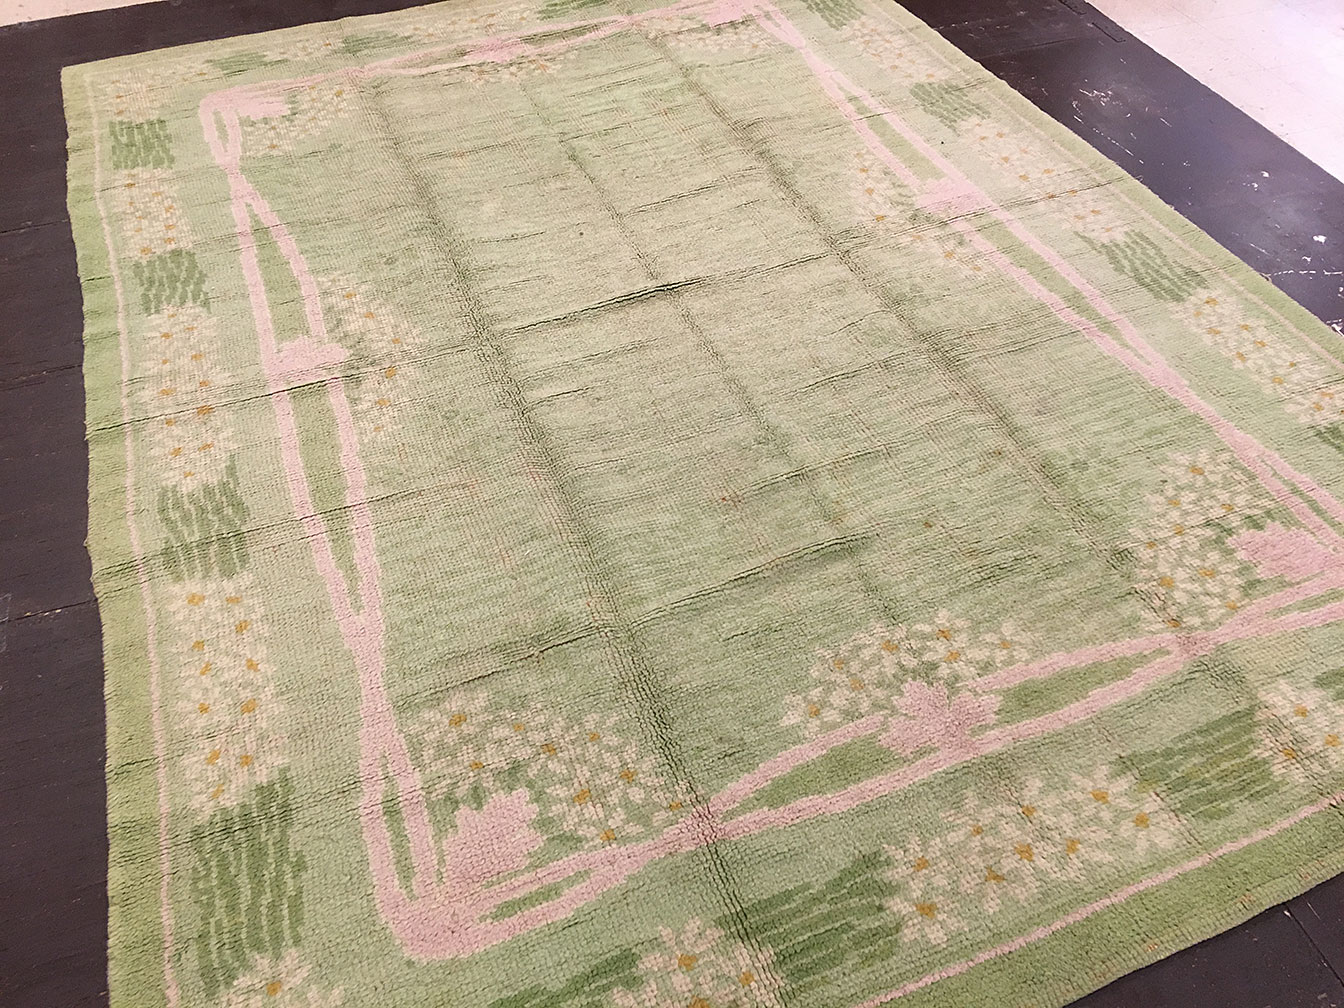 Antique donegal Carpet - # 52943